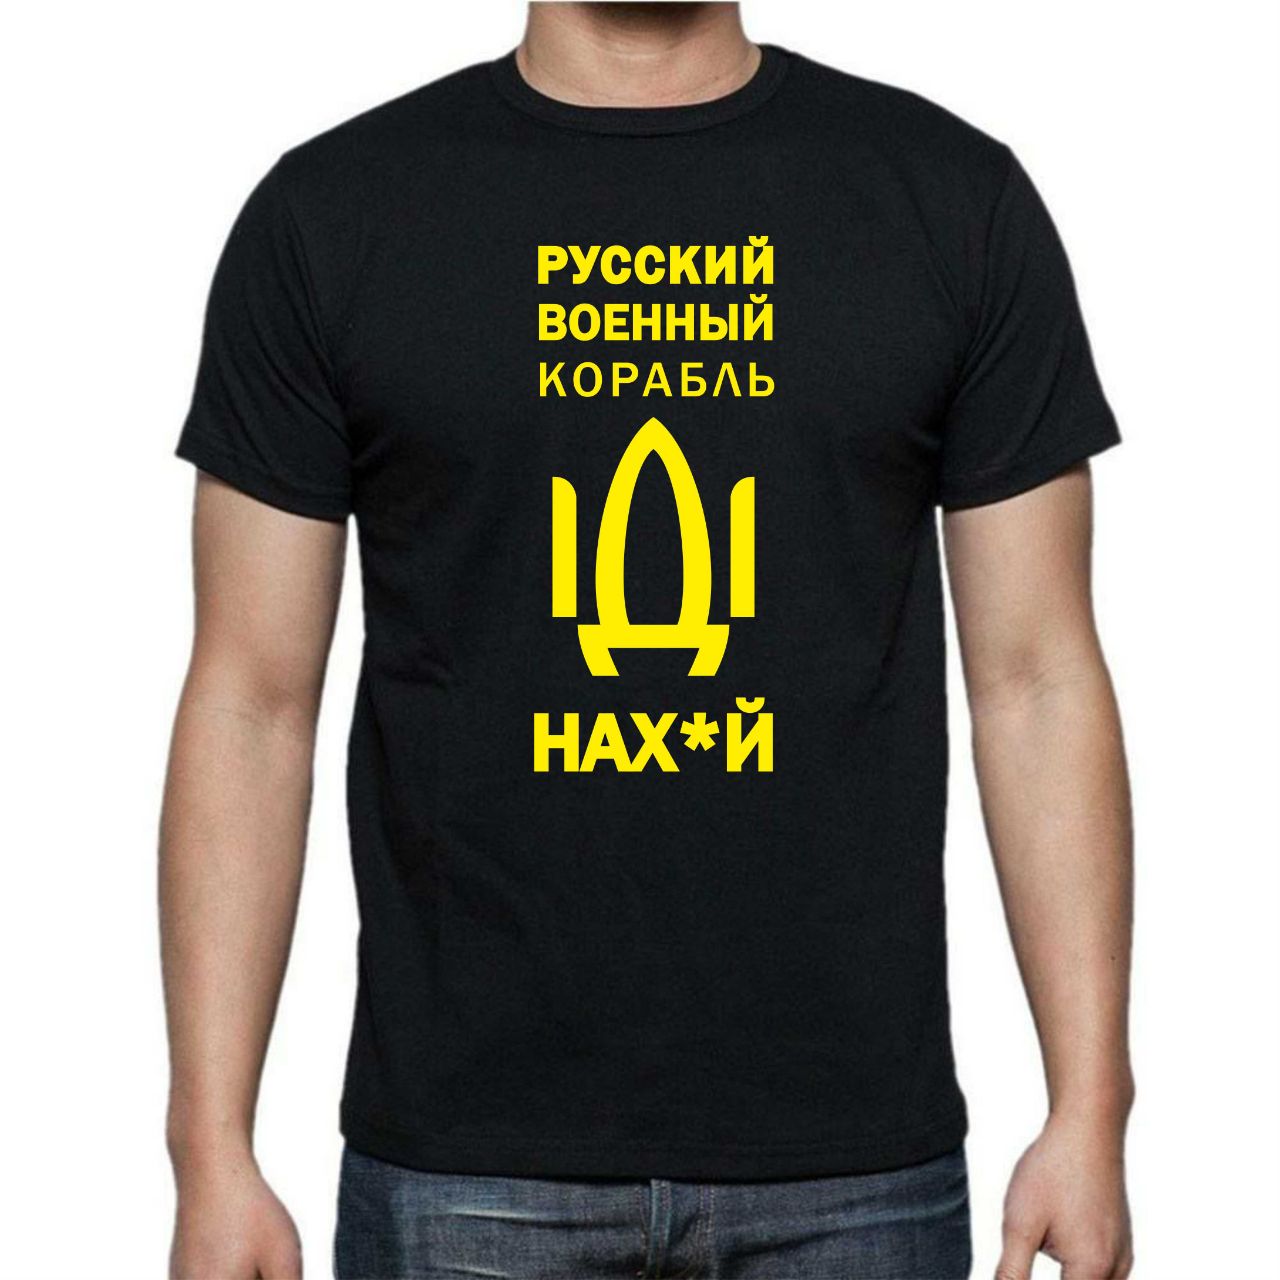 Патріотична футболка №6. Україна. Русский военный корабль иди нах*й